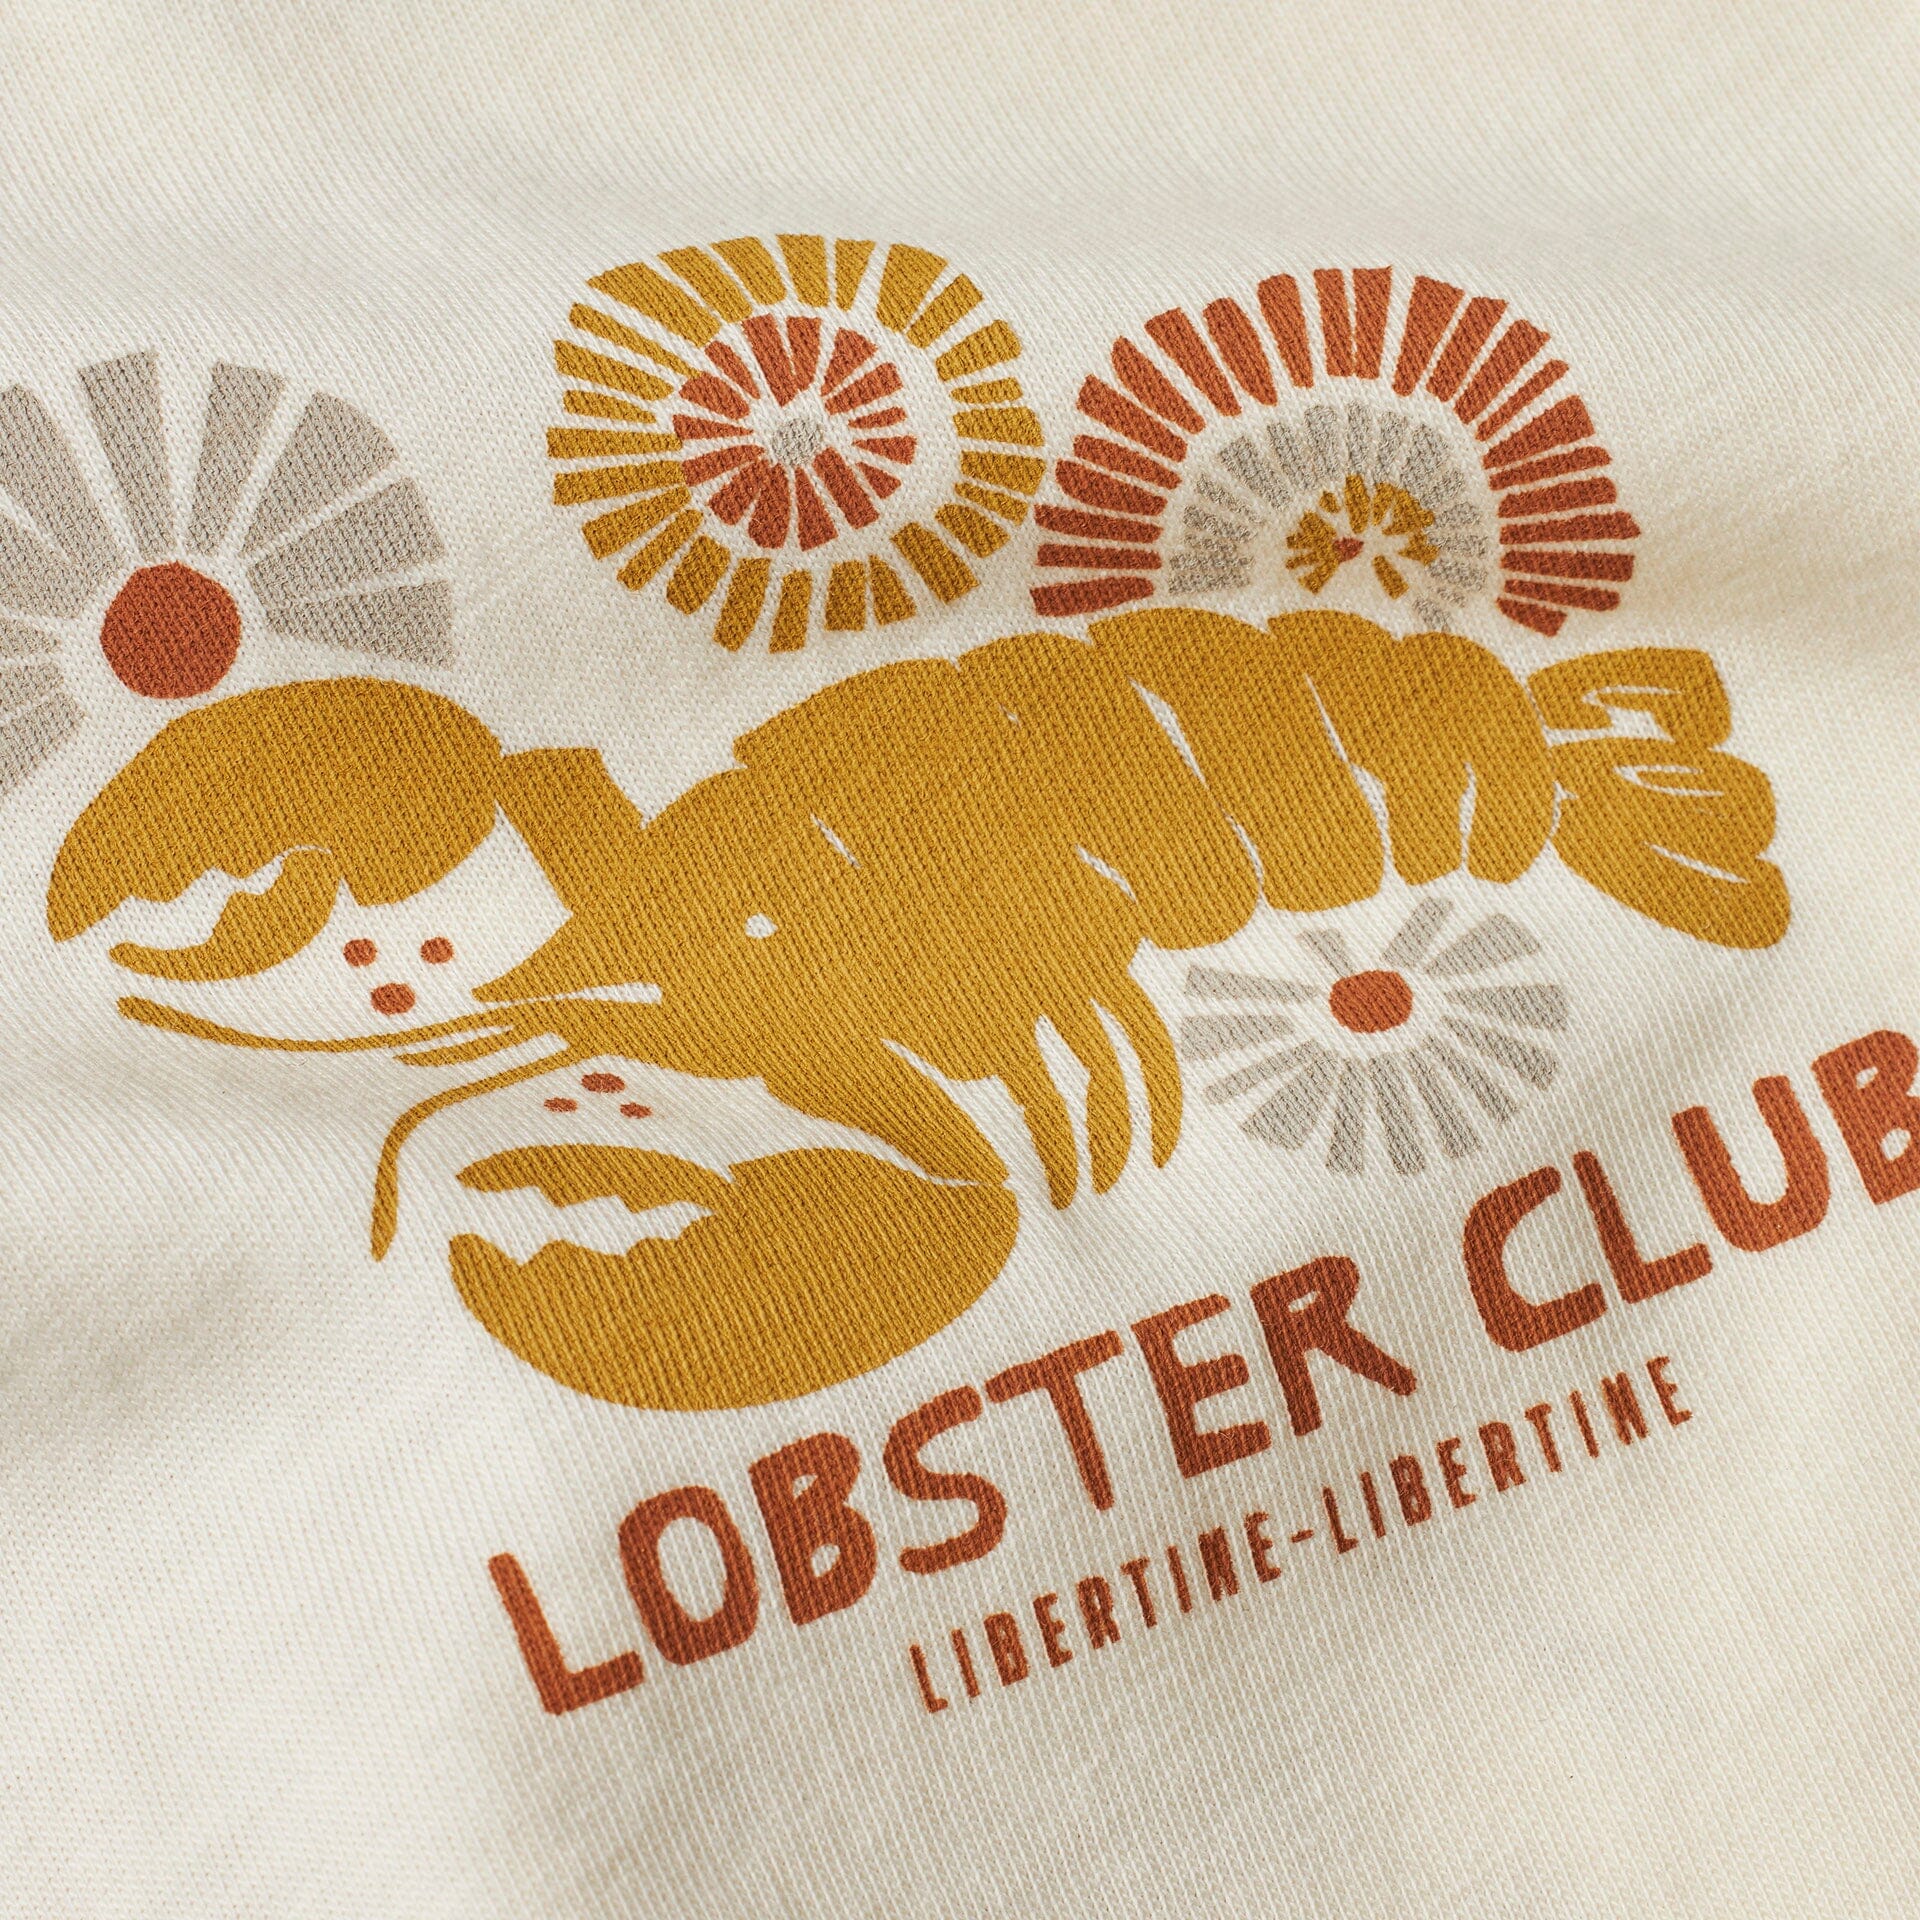 Libertine-Libertine Beat Lobster Tan T-Shirt - White T-Shirt Libertine-Libertine 